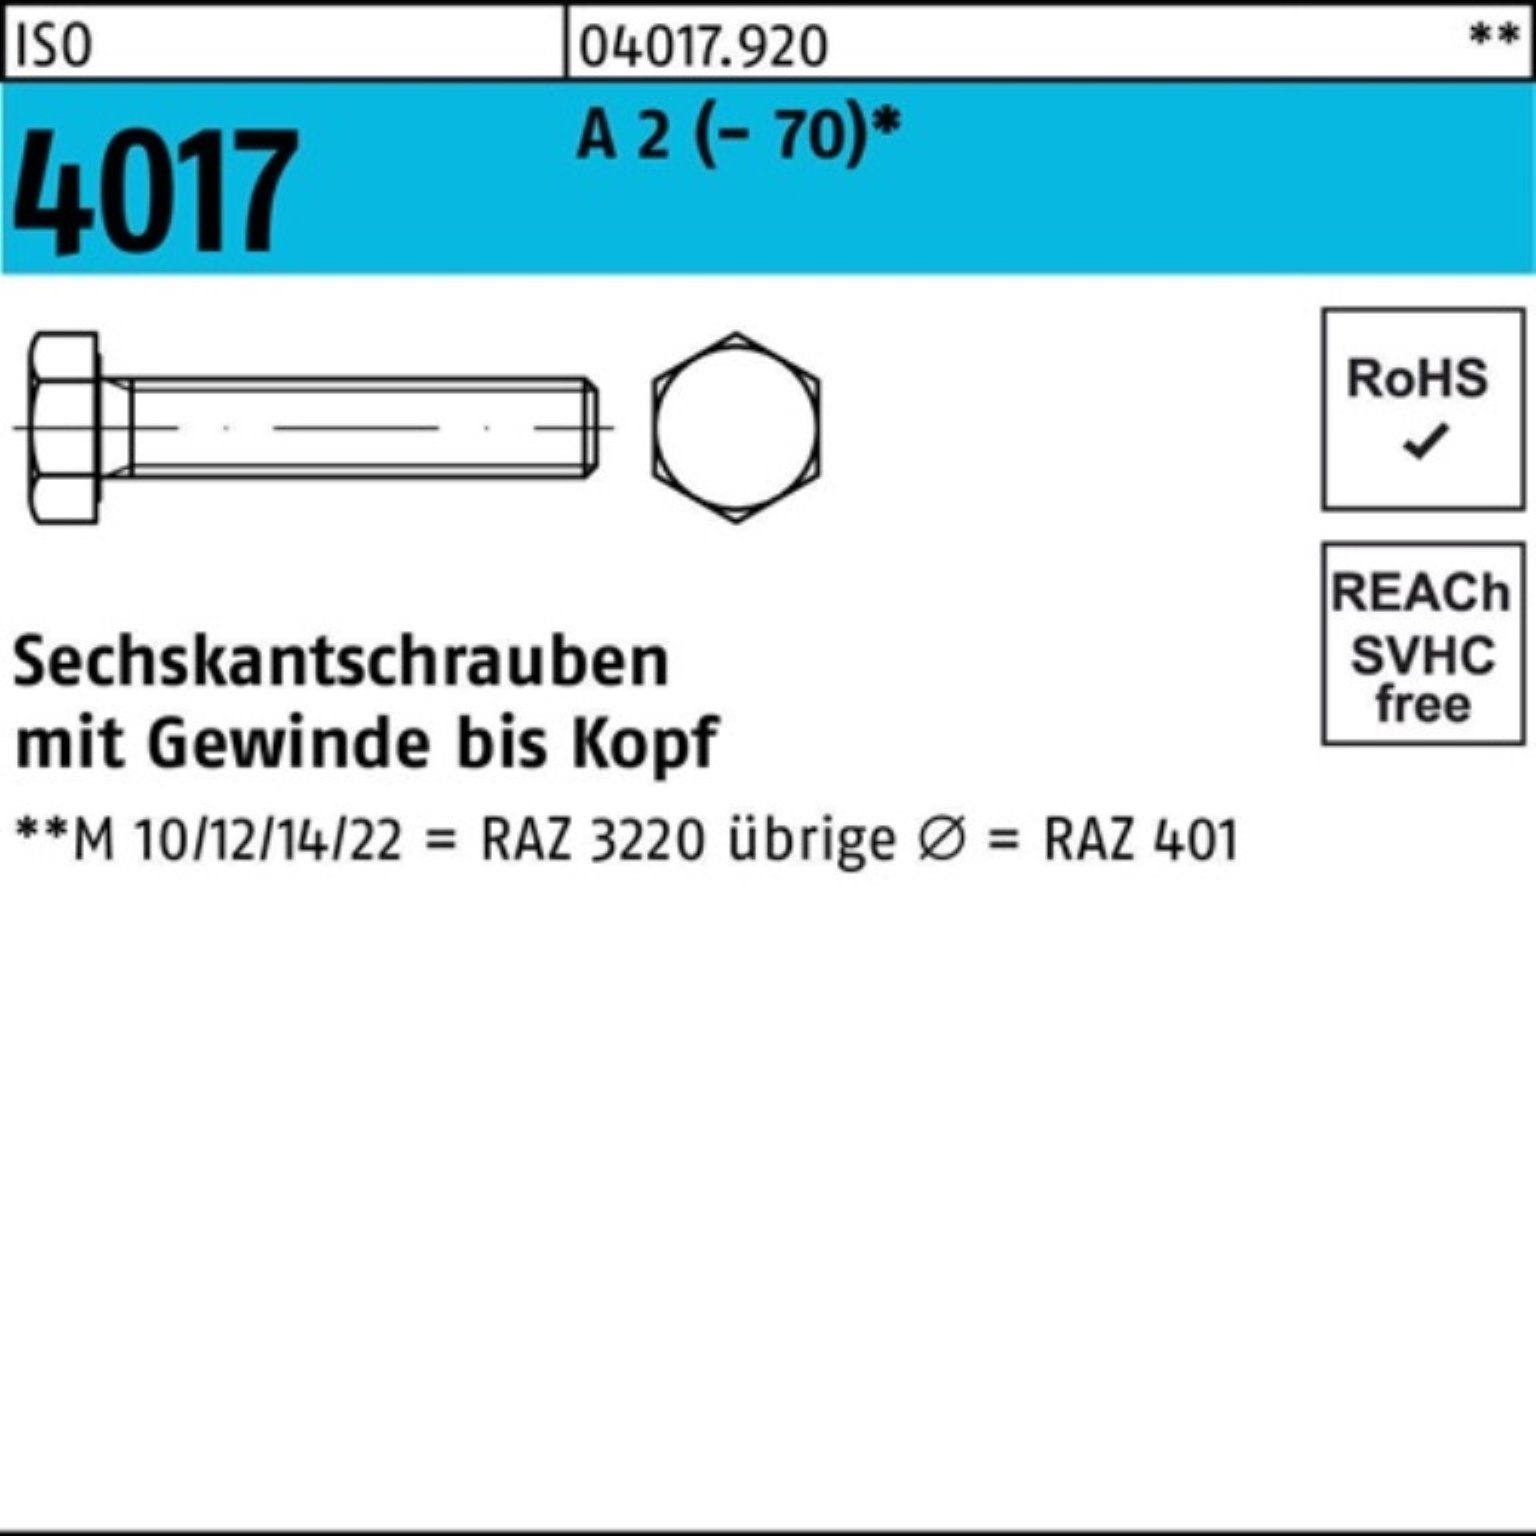 Bufab Sechskantschraube 100er Pack Sechskantschraube ISO 4017 VG M6x 45 A 2 (70) 100 Stück